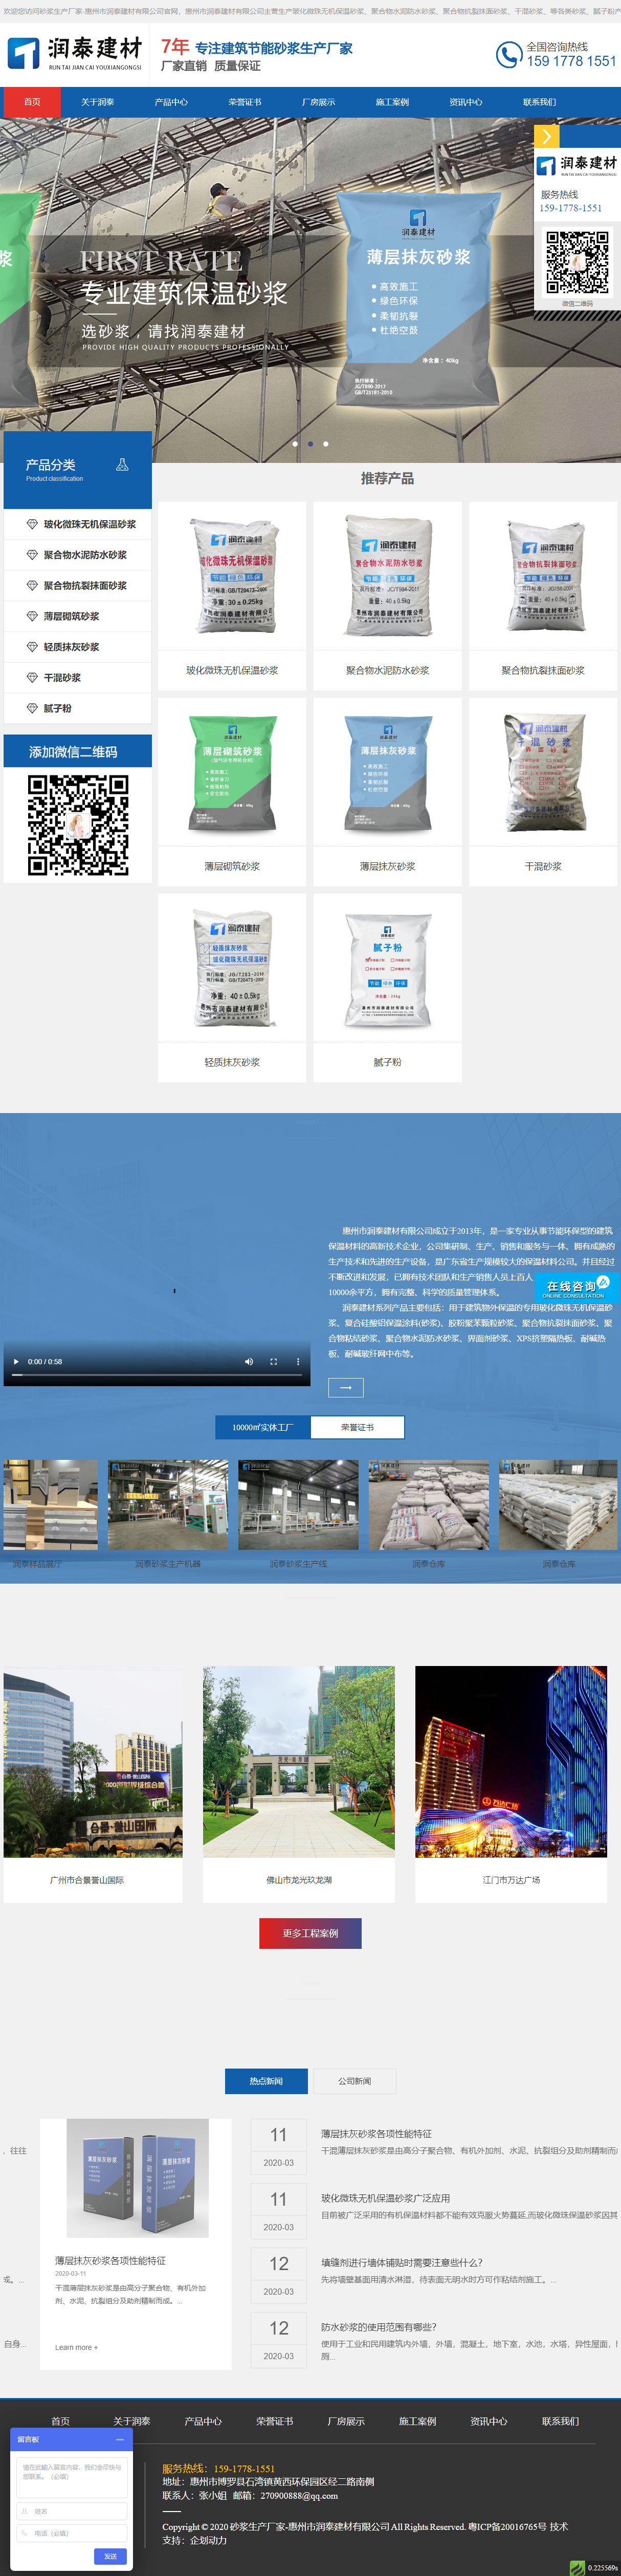 惠州市润泰建材有限公司网站案例